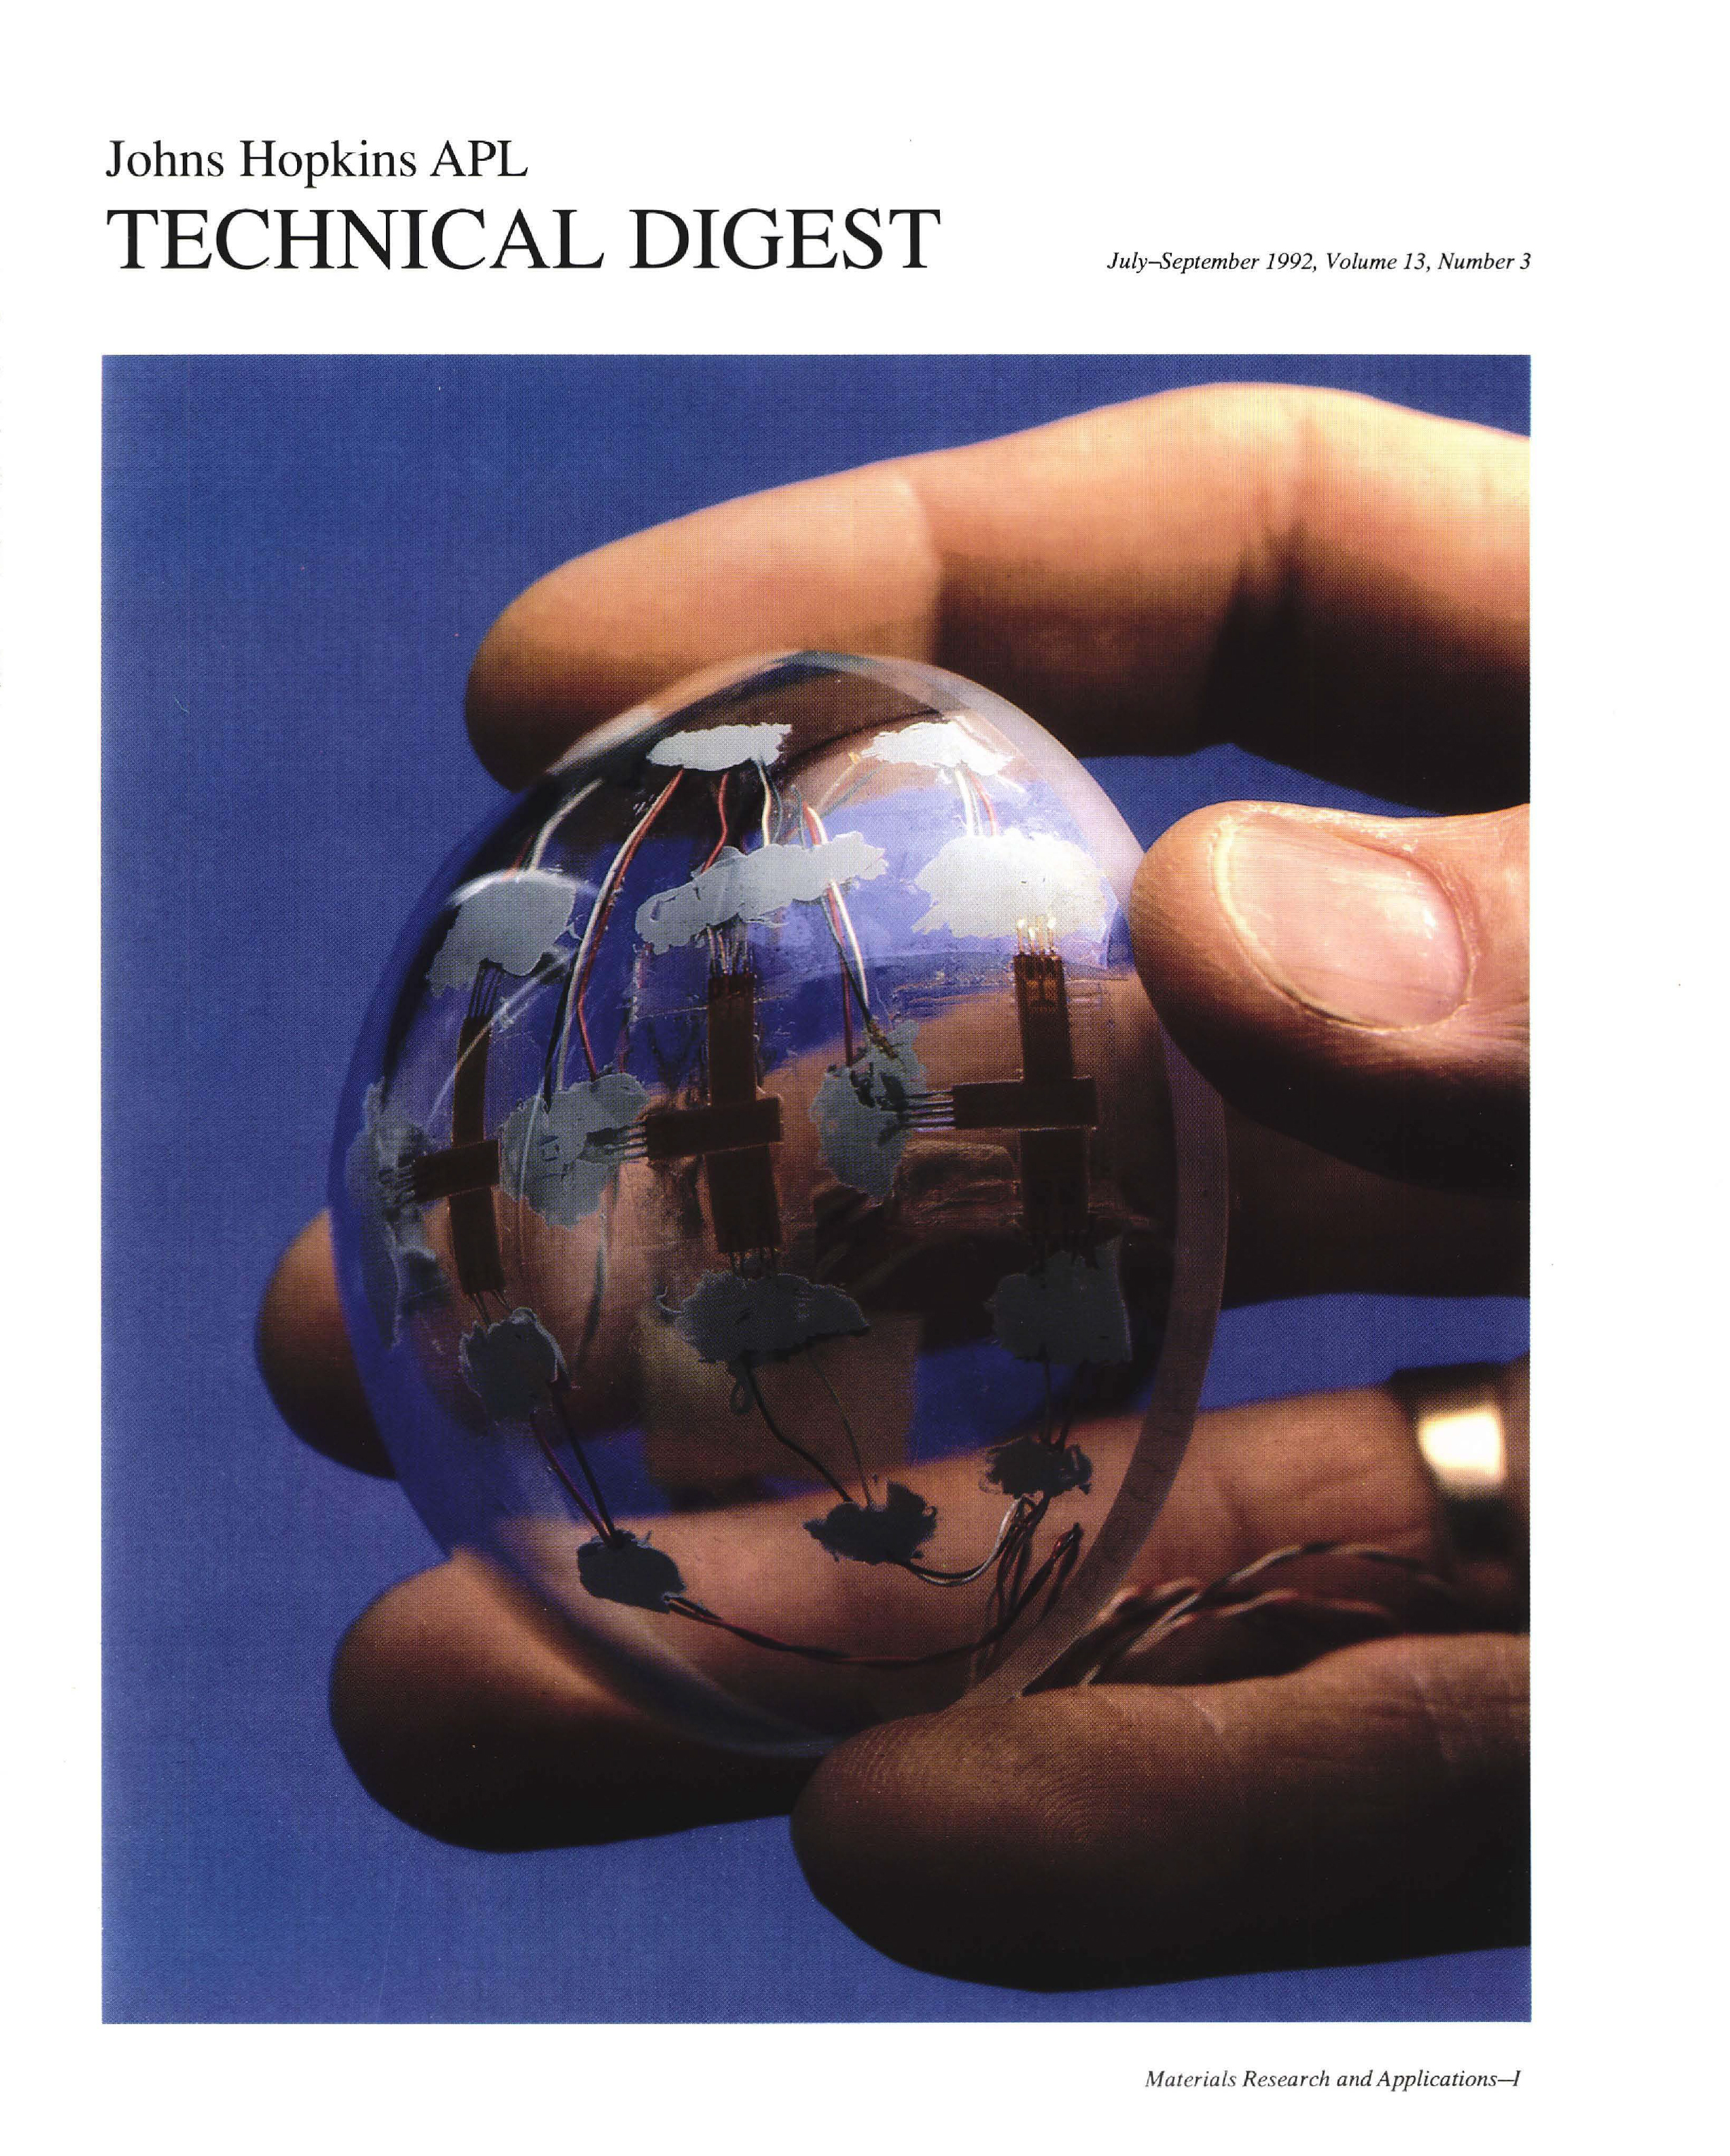 Tech Digest Vol.13 Num.3 Cover